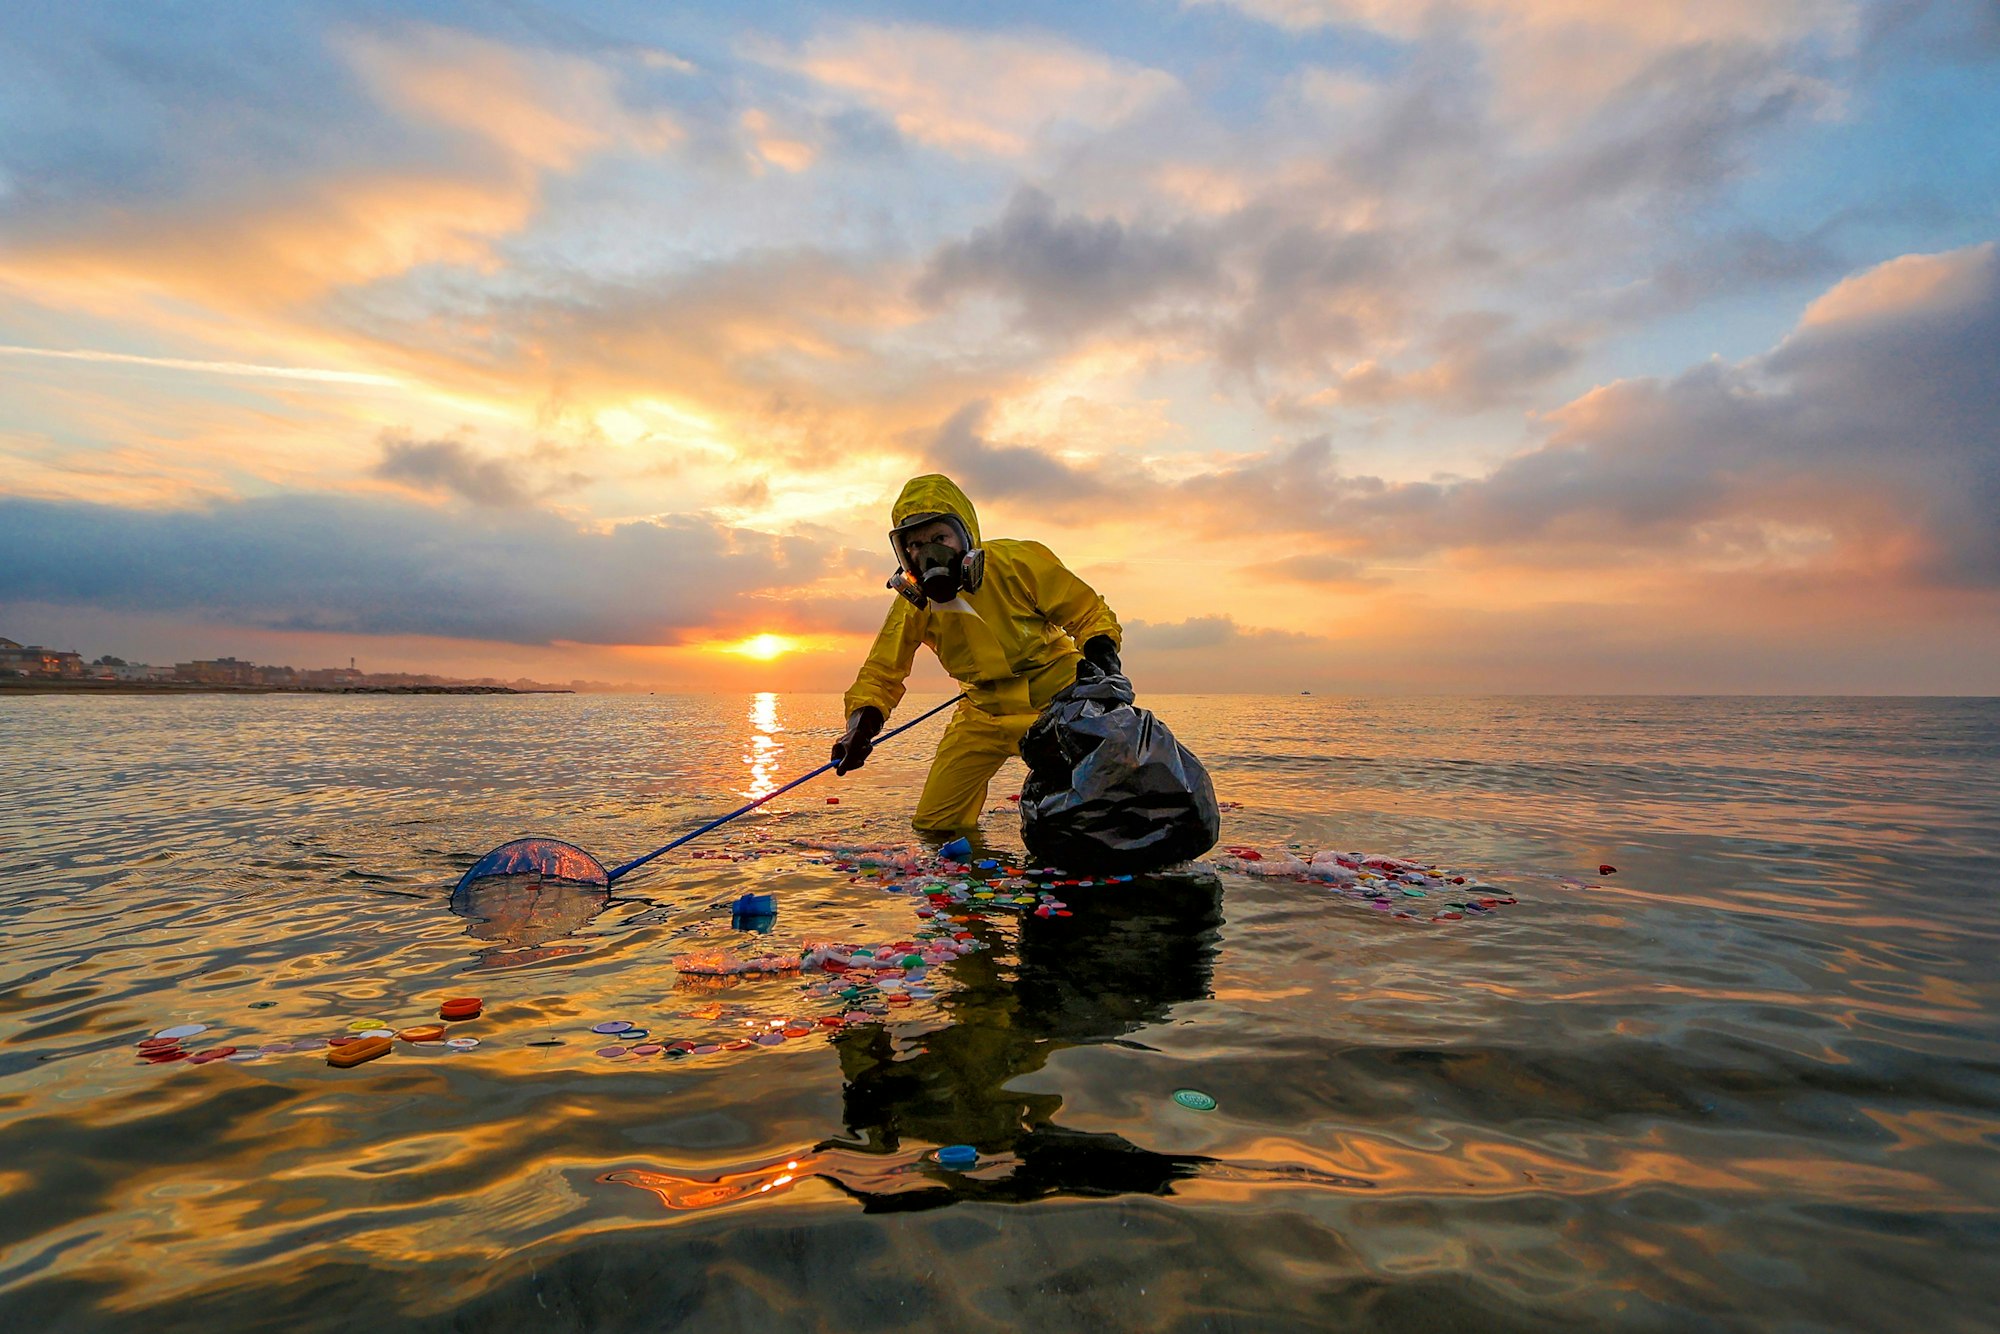 Die Biologin Laura Rosati sammelt und analysiert Plastik und Mikroplastik in zunehmend belasteten und verschmutzten Gewässern als Teil einer Freiwilligengruppe, die sich für die Reinigung des Meeres einsetzt. Ihr Ziel ist es, das Ökosystem des Meeres zu schützen und Menschen auf der ganzen Welt zu sensibilisieren. Das Foto ist in Rom entstanden.